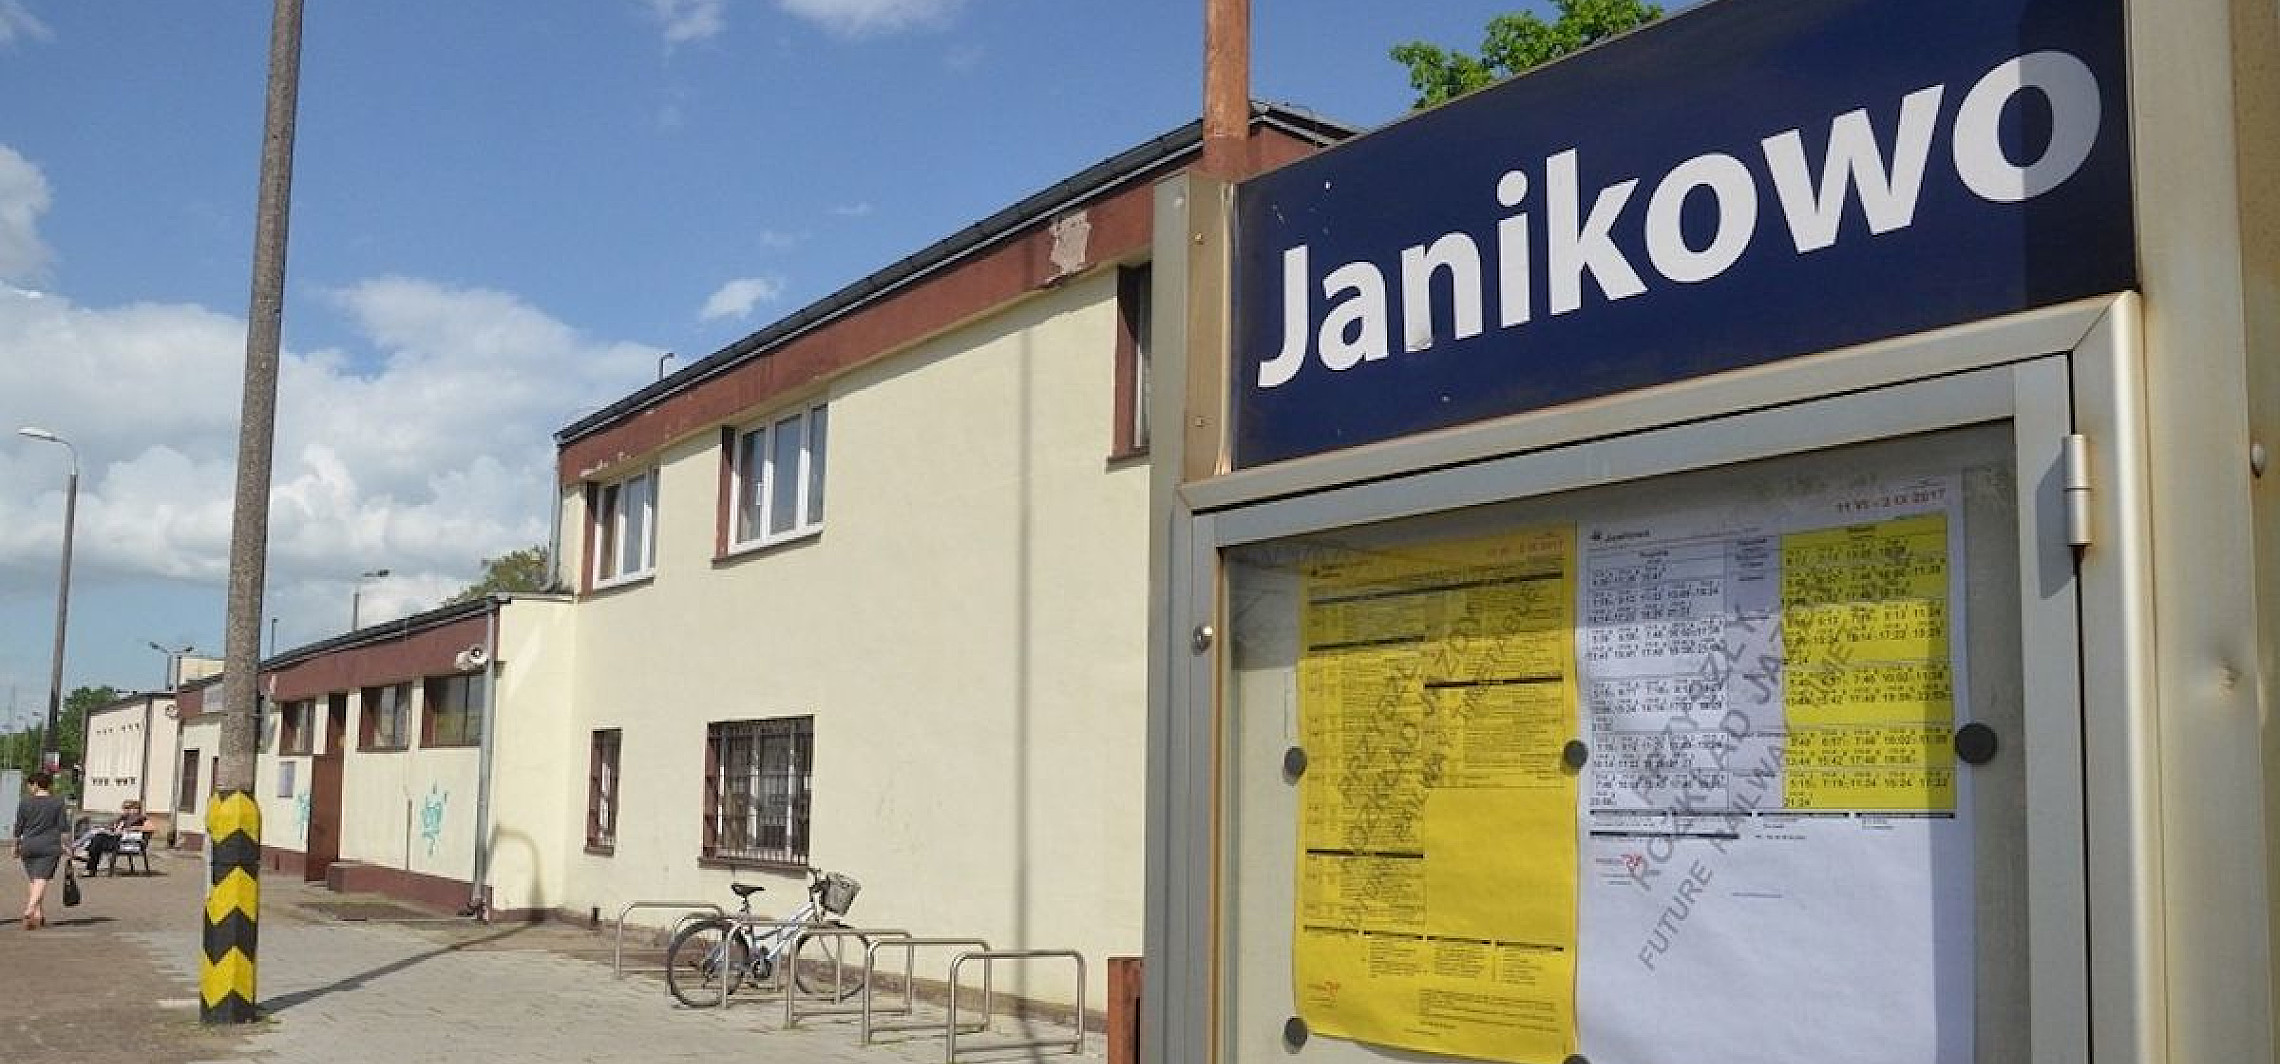  Janikowo Zburz Dworzec W Janikowie I Postawi Nowy Ino online 